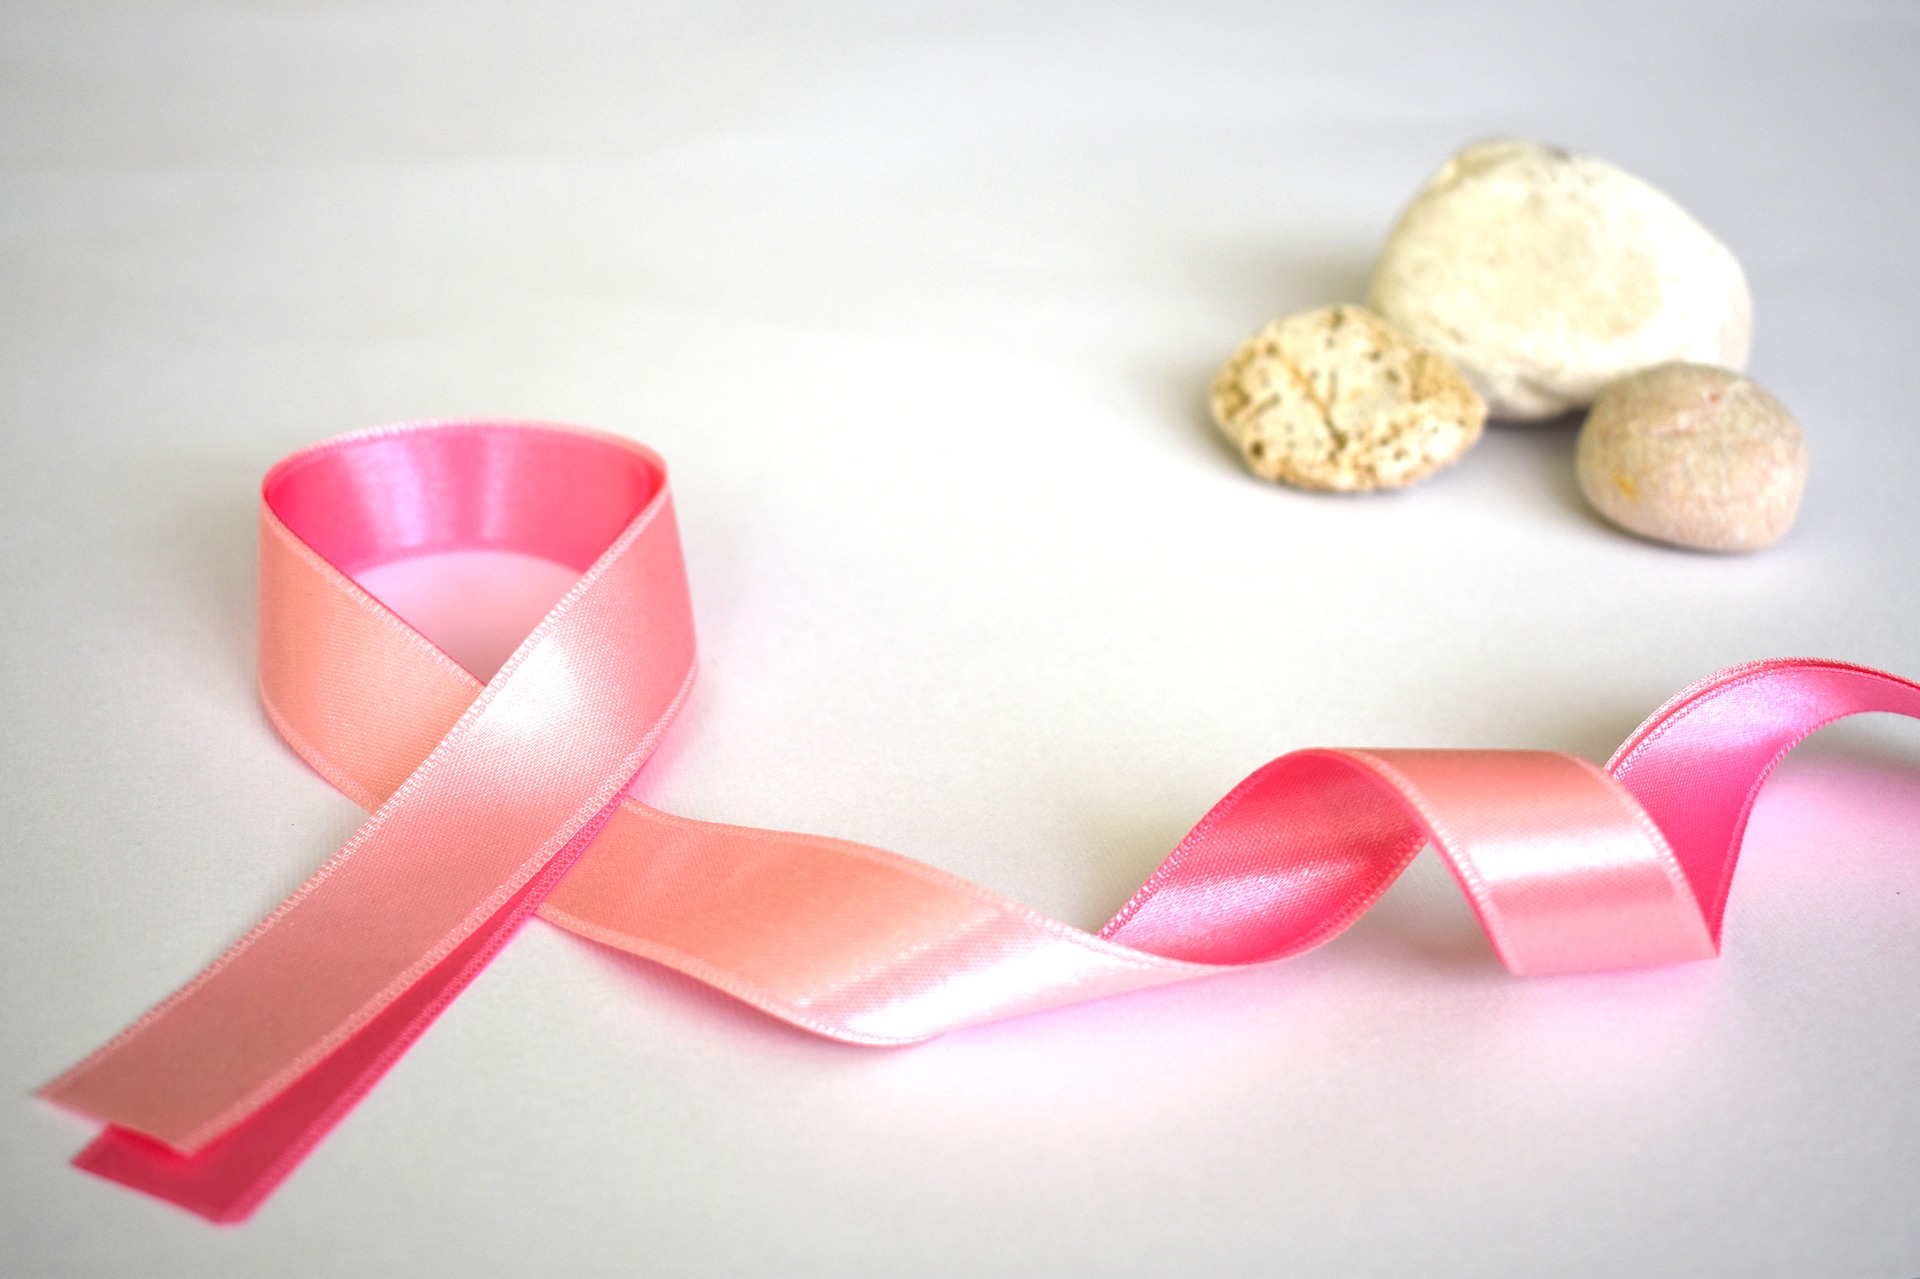 Bezpłatne badania mammograficzne w ramach programu profilaktyki raka piersi 9